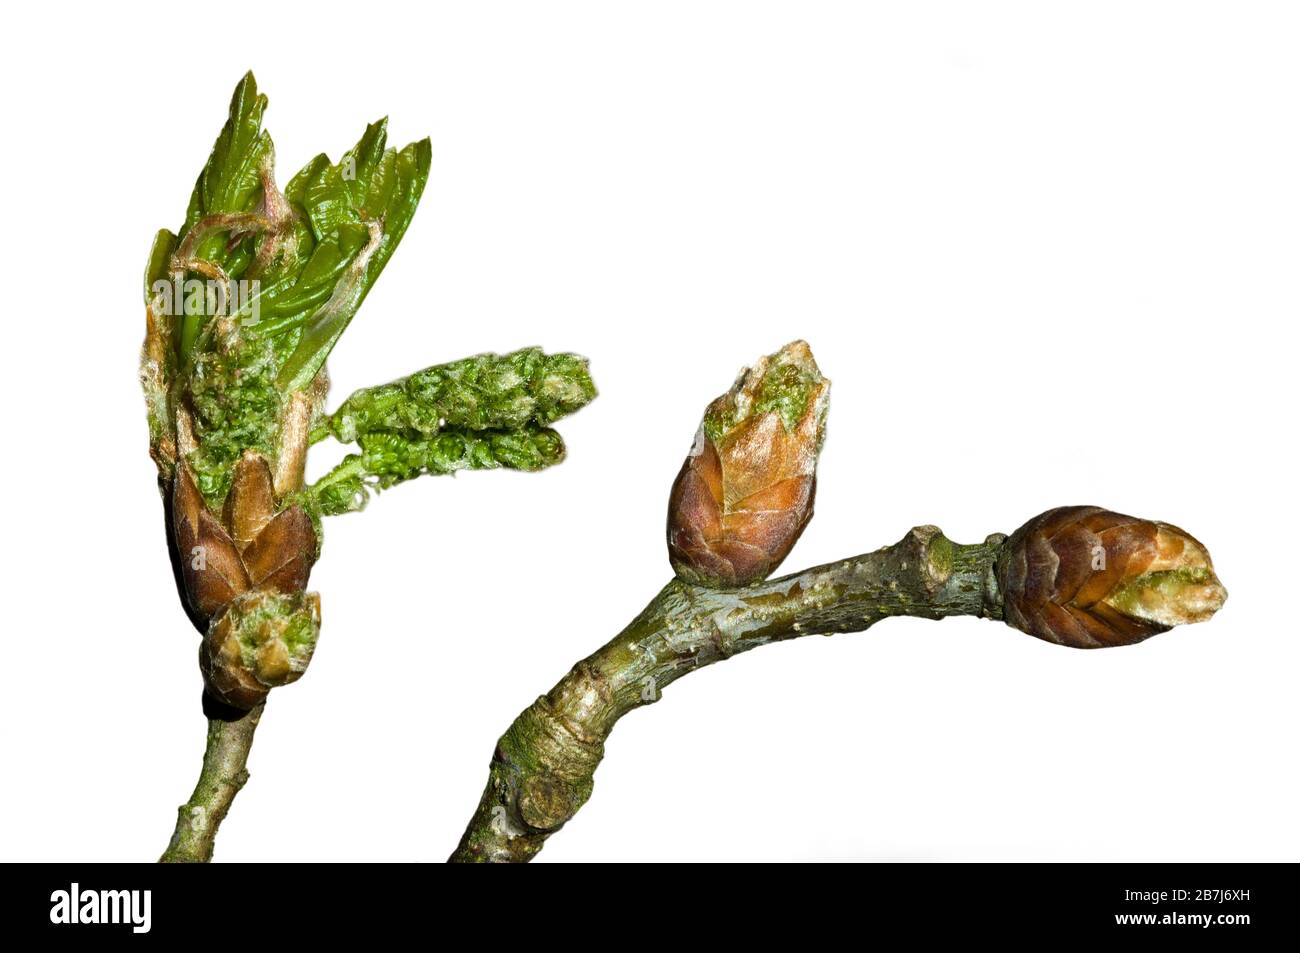 Roble pedunculado / roble inglés (Quercus robur) primer plano de ramita con brotes que se abren y las hojas se despelan en primavera contra fondo blanco Foto de stock